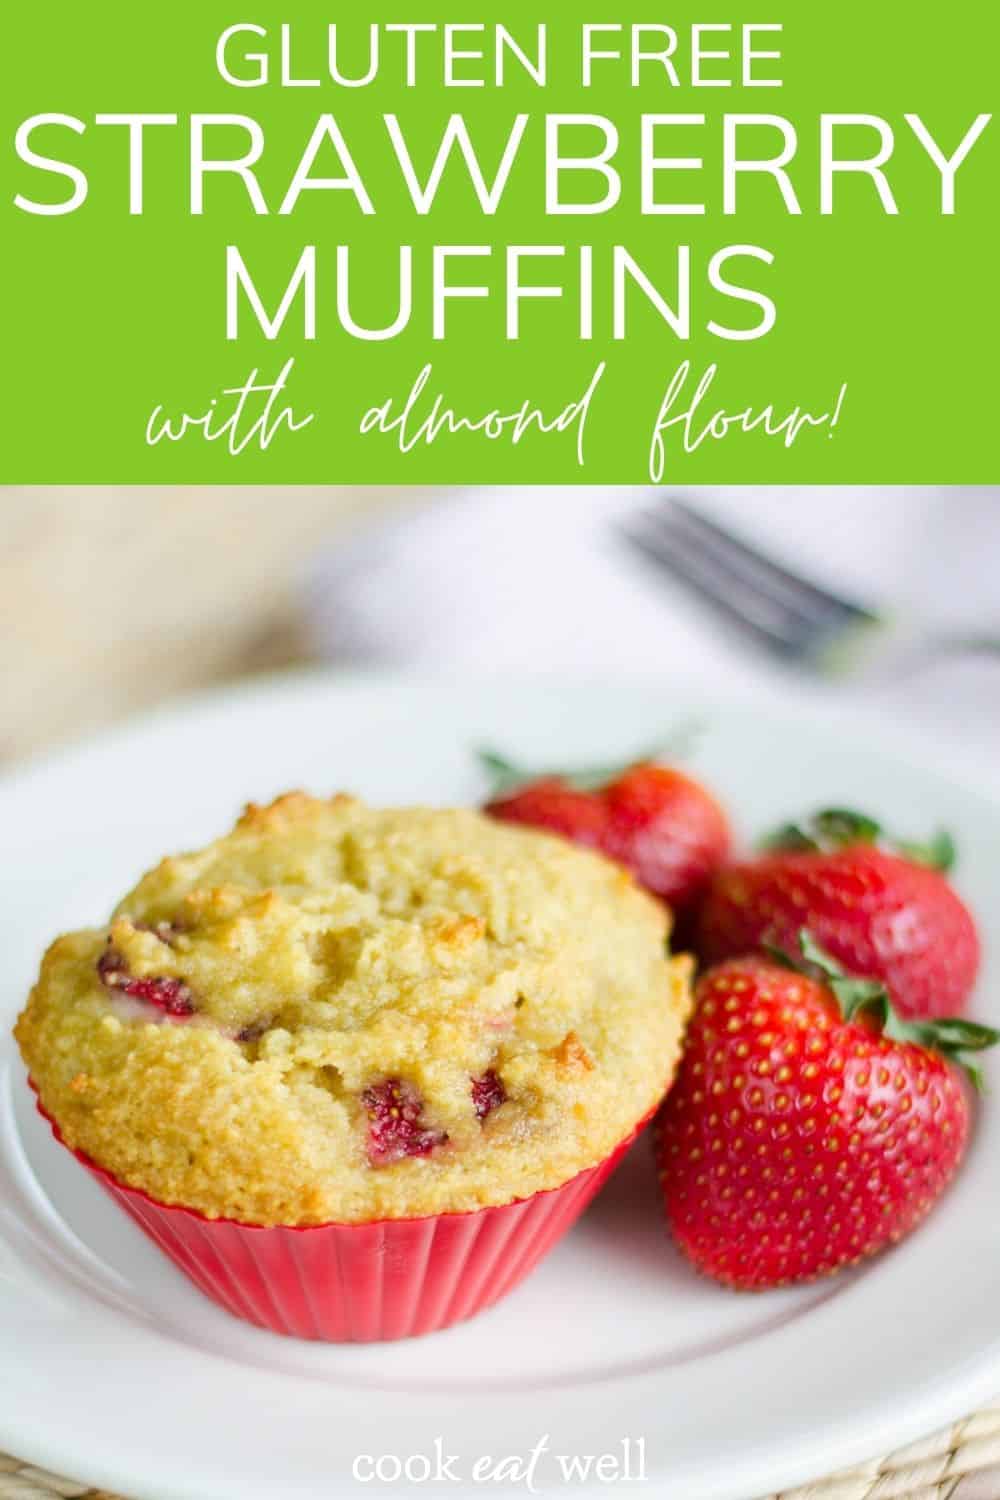 Gluten free strawberry muffins with almond flour!